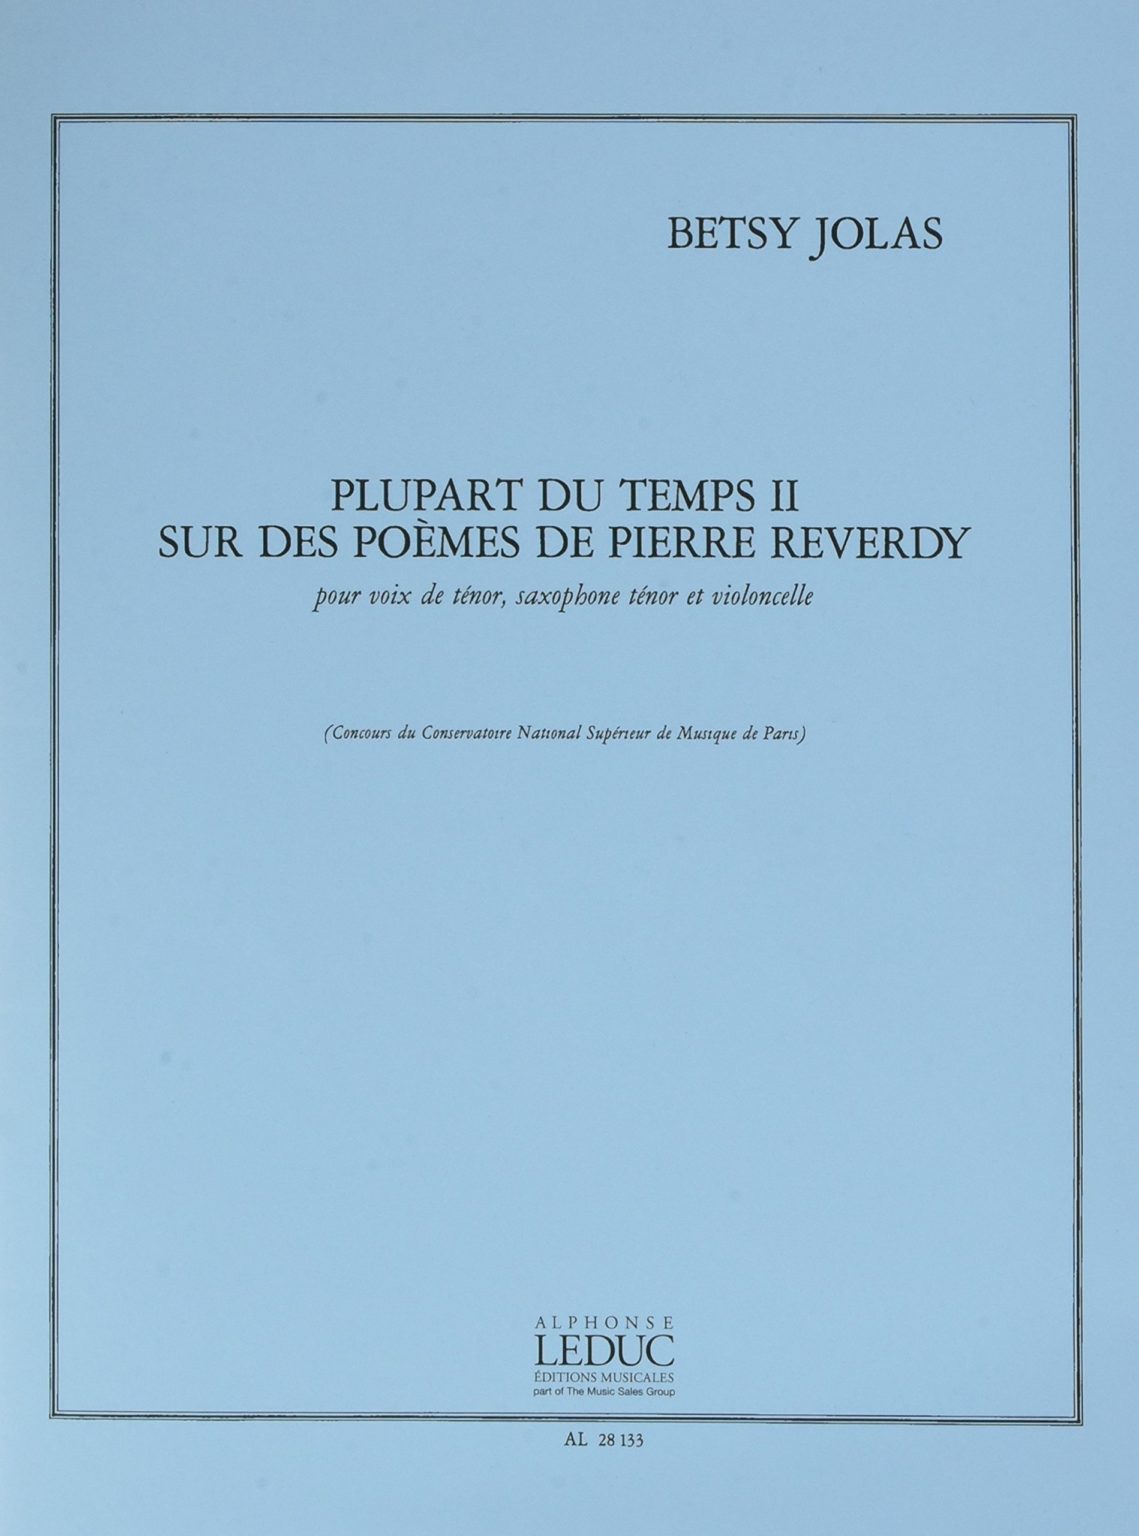 Plupart du temps II sur des poemes de Pierre Reverdy. Betsy Jolas